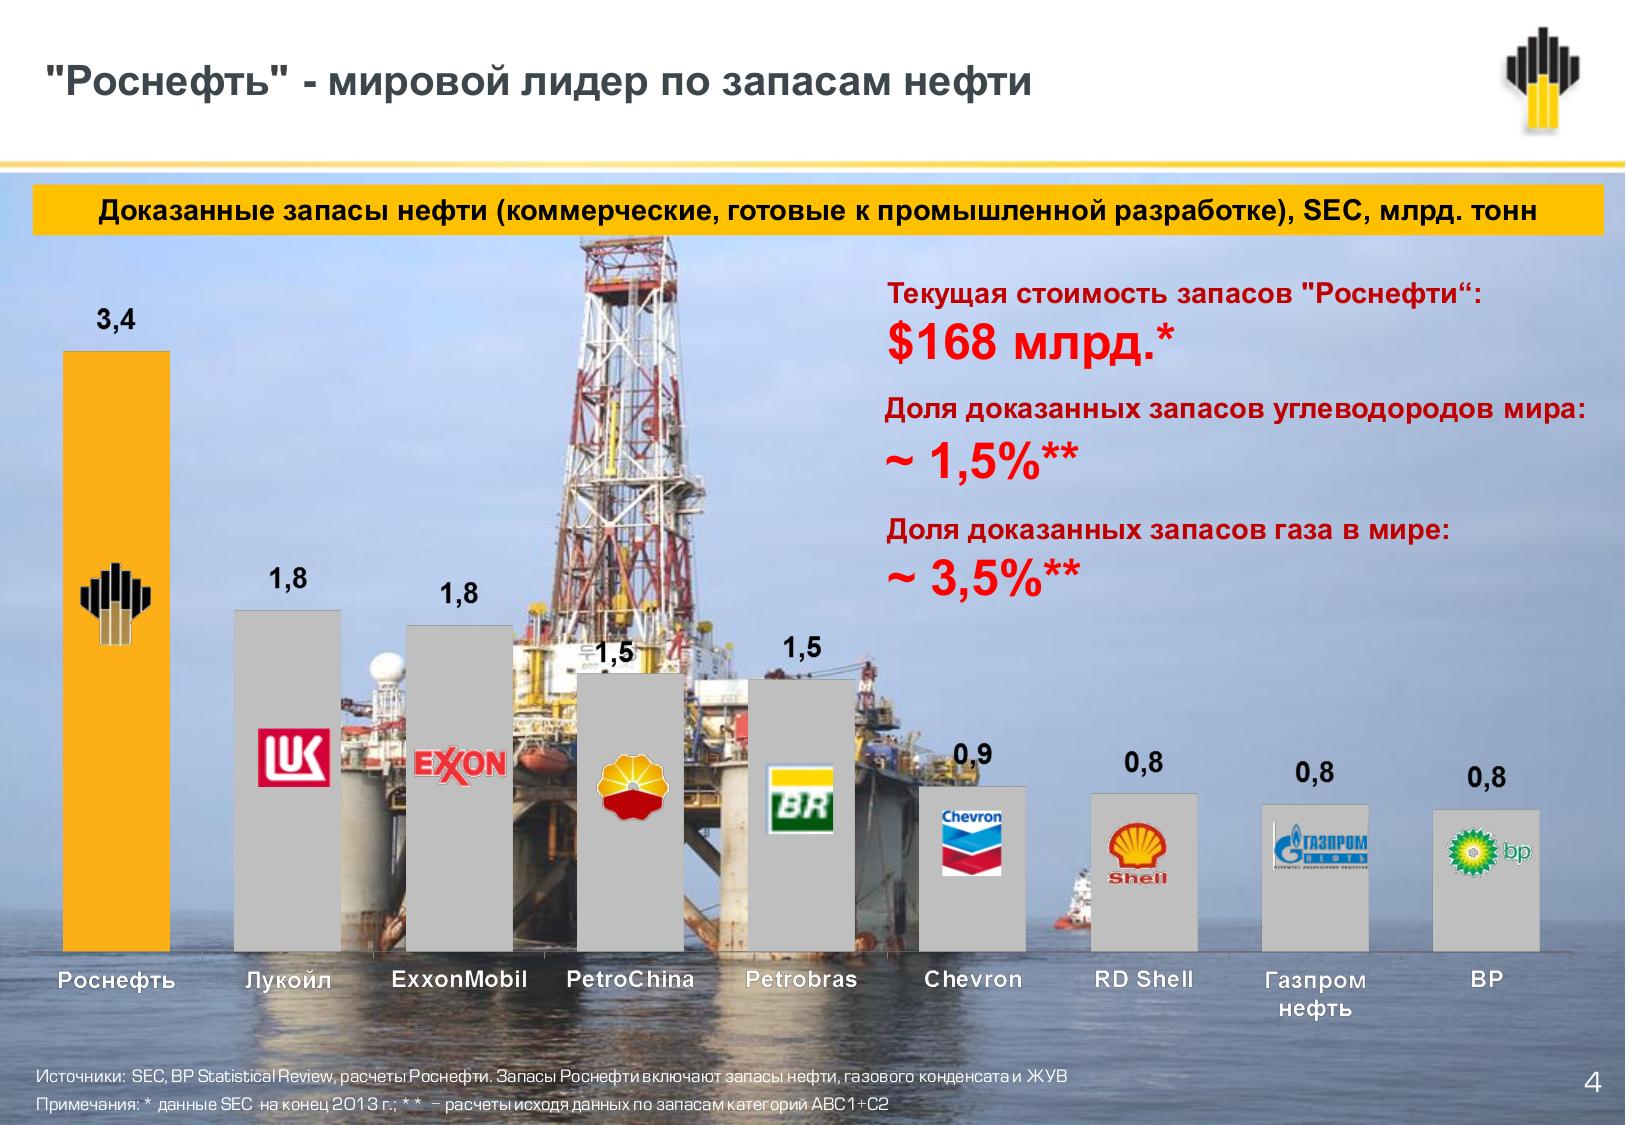 Основные запасы нефти сосредоточены. Российские нефтяные компании. Иностранные нефтяные компании. Крупные нефтегазовые компании. Нефтяная компания Роснефть.